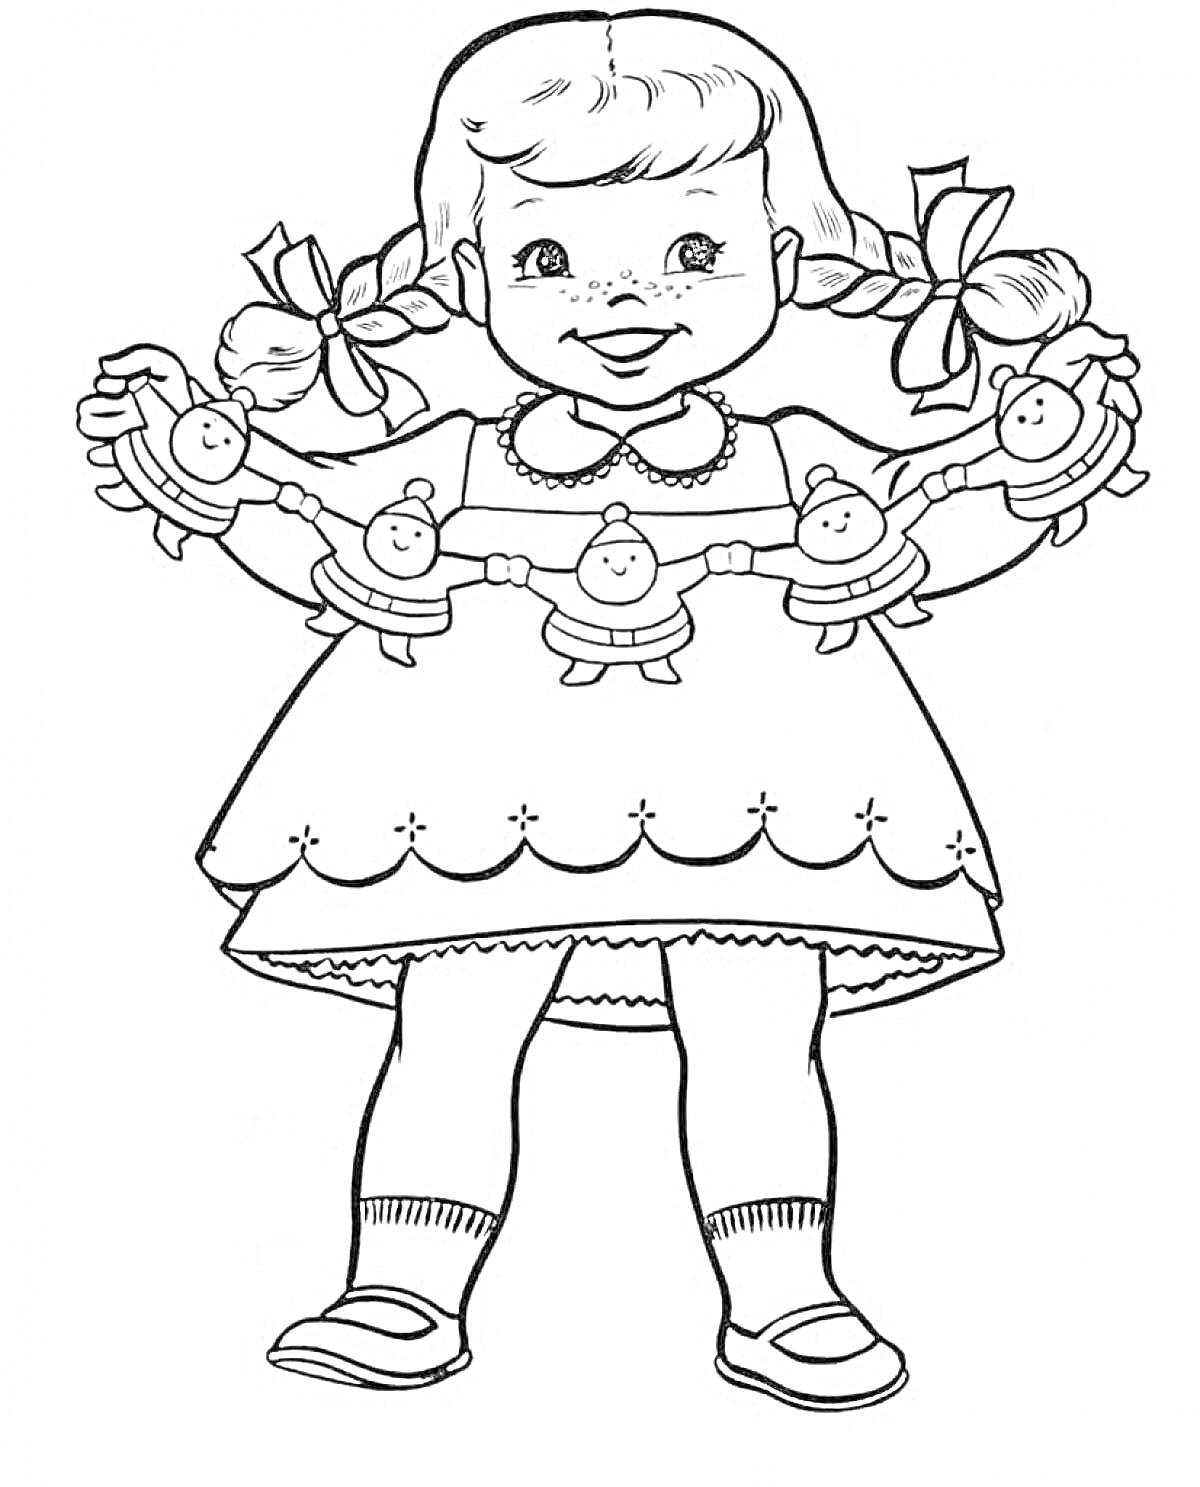 Раскраска Кукла с косичками и бумажными куклами в руках